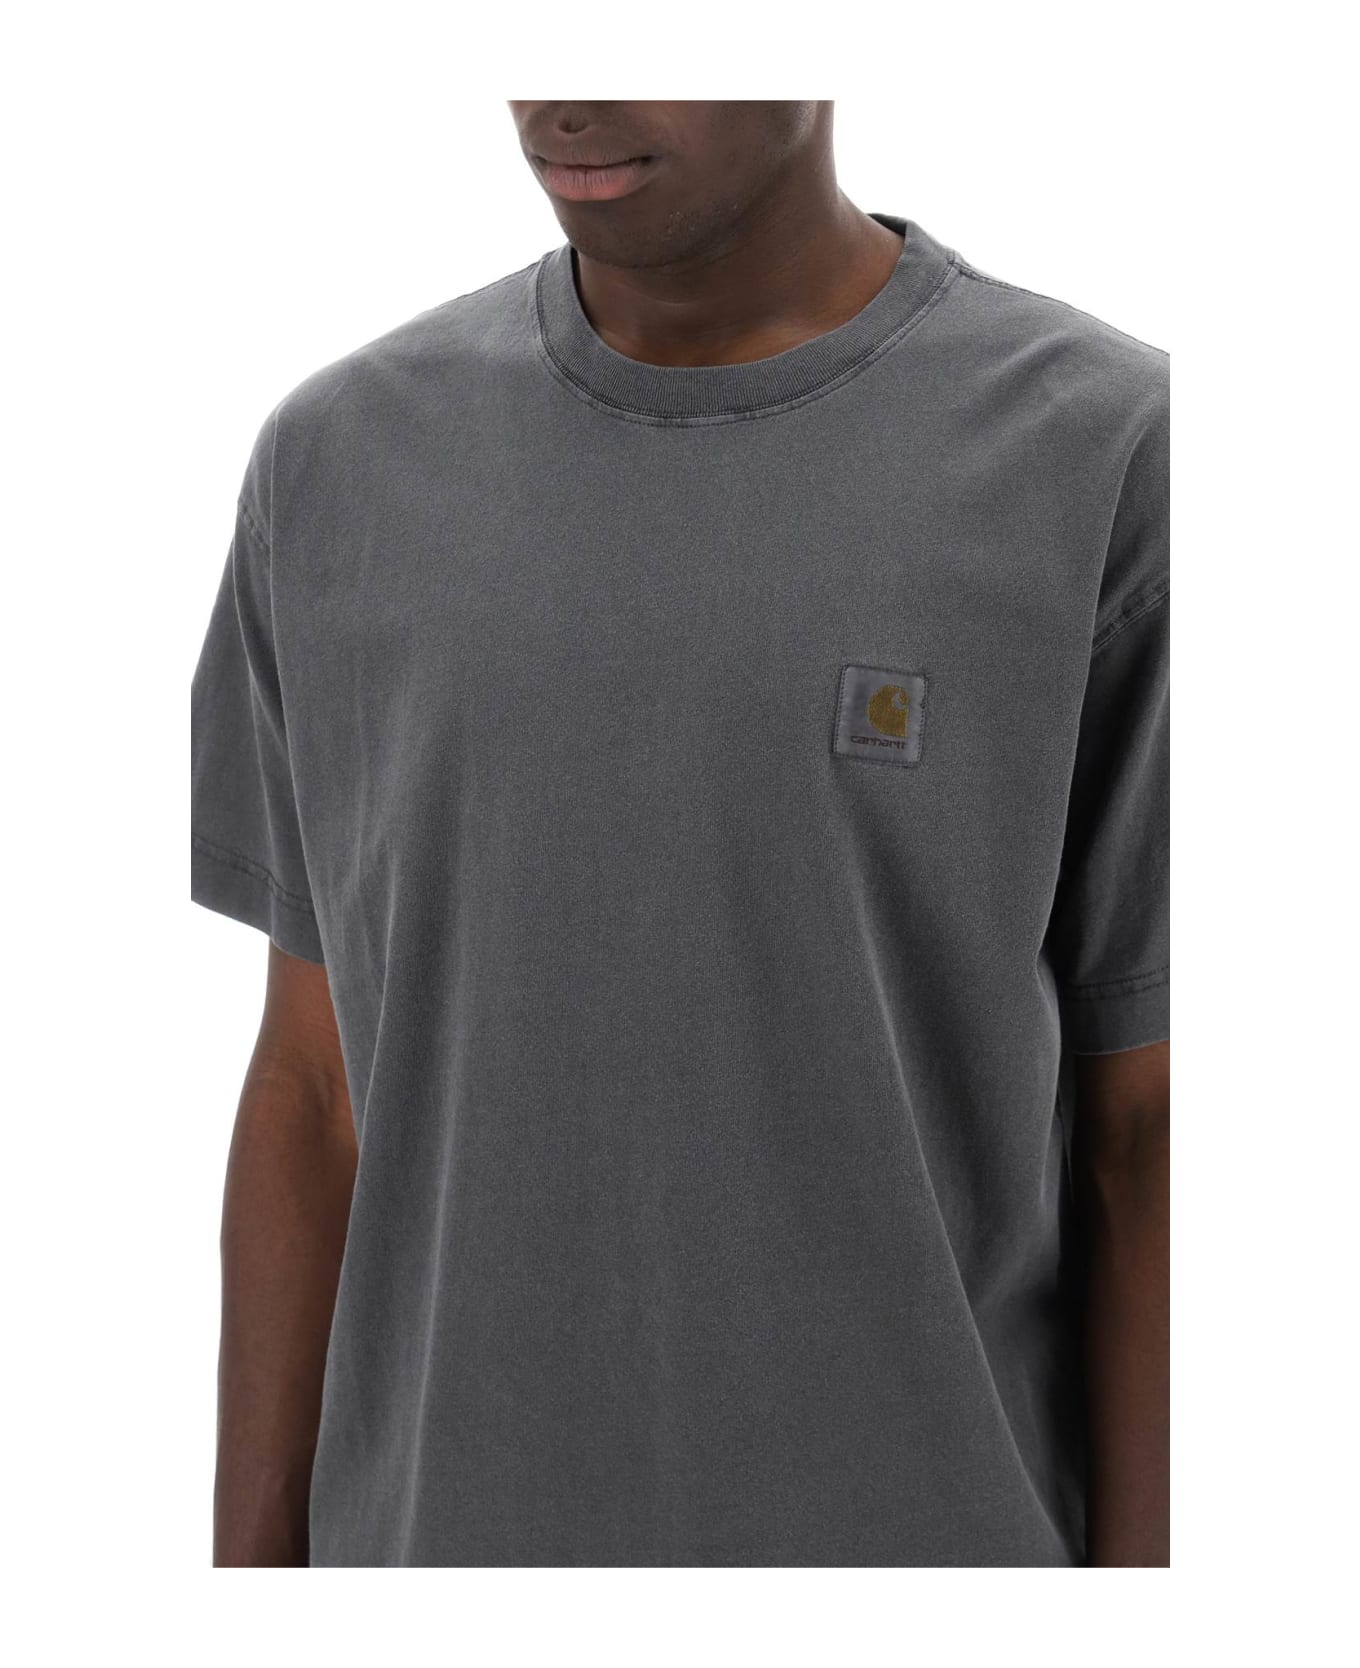 Carhartt Nelson T-shirt - Charcoal